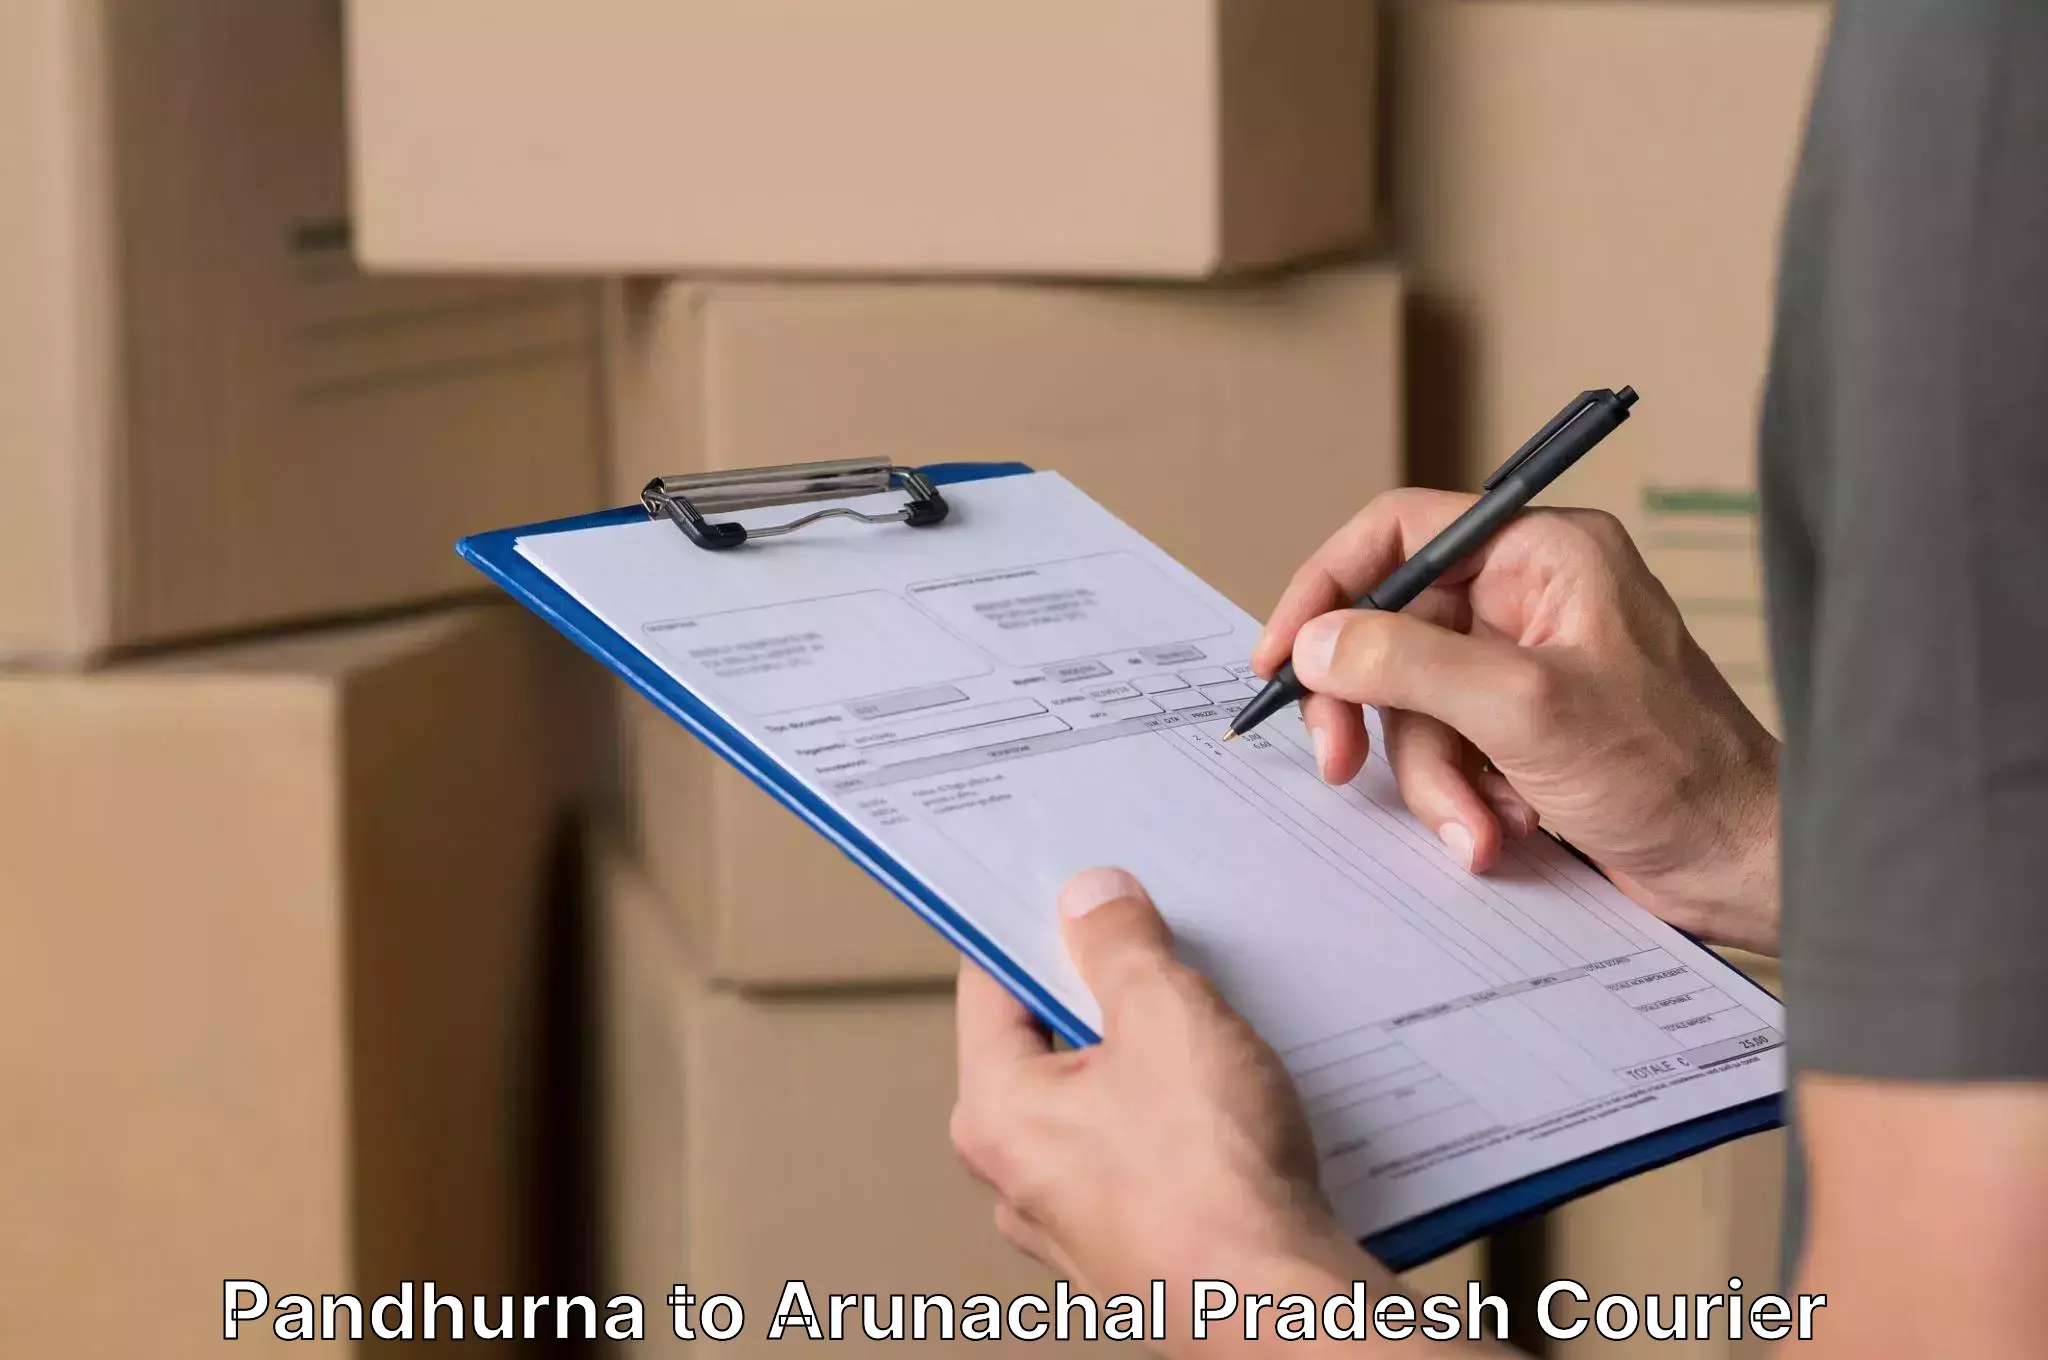 Professional furniture moving Pandhurna to Arunachal Pradesh